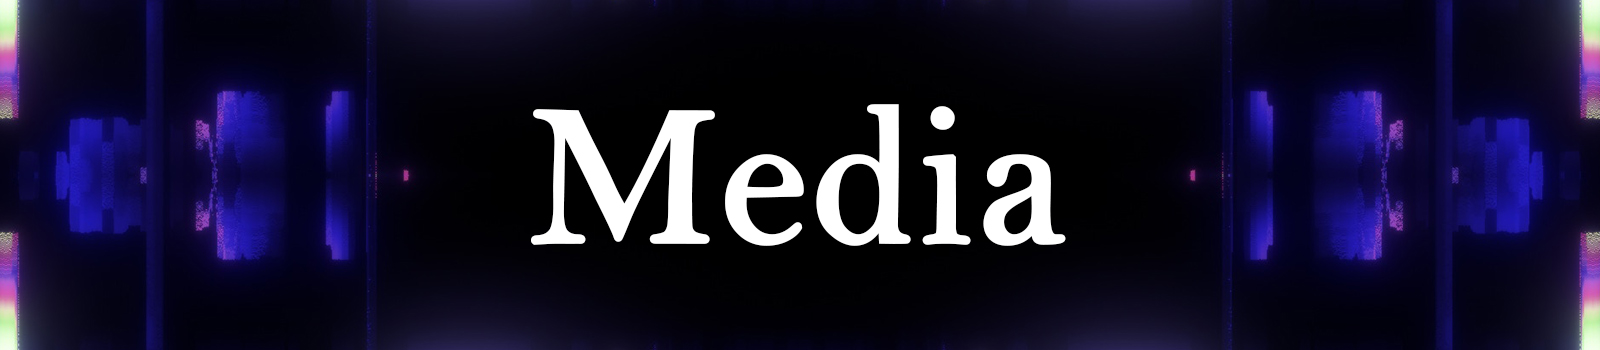 Media Banner